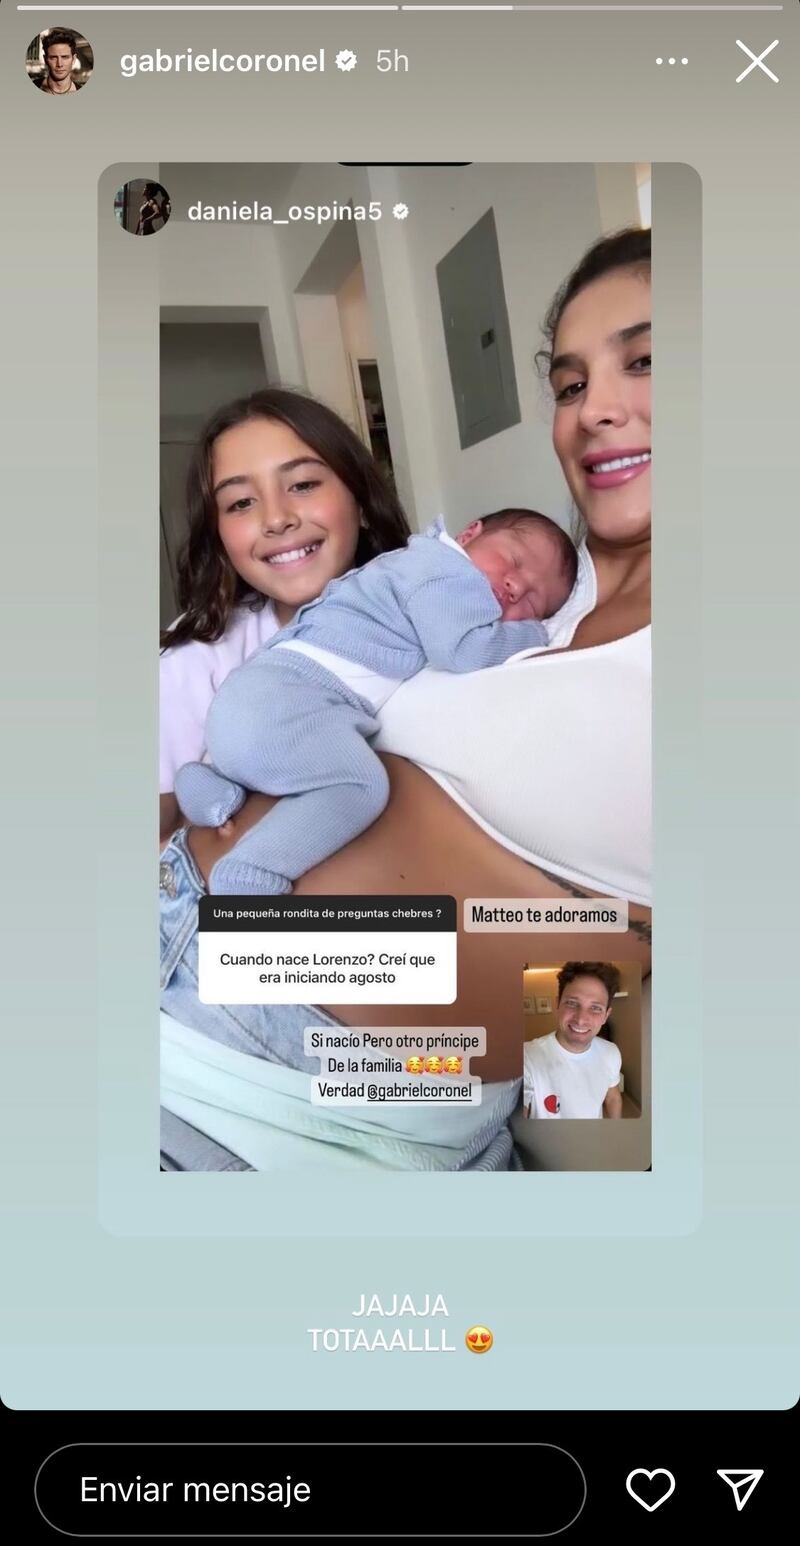 Daniela Ospina aclaró que su hijo no nacerá en agosto, sino en noviembre junto a otro bebé